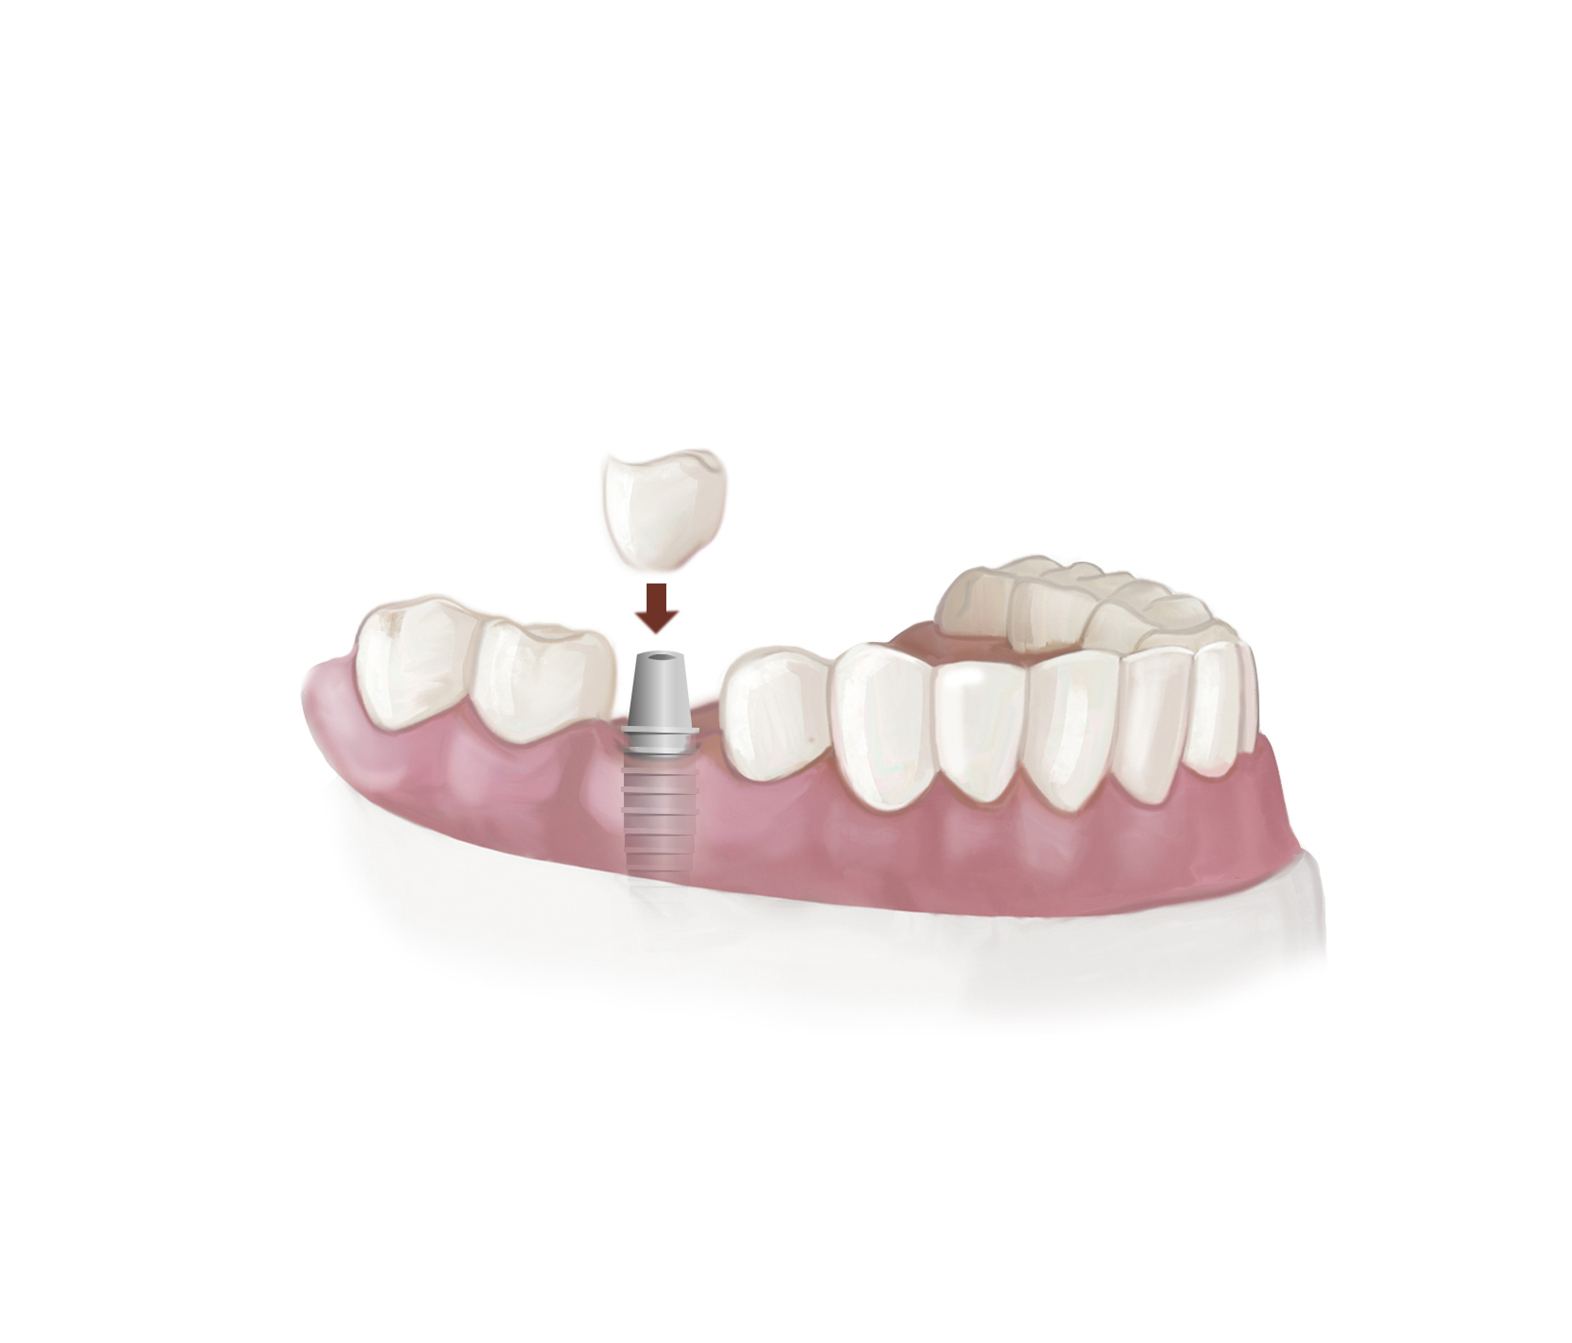 Prothèse dentaire fixe - Dentier, Bridge, Implant, Couronne - Prix et Usage